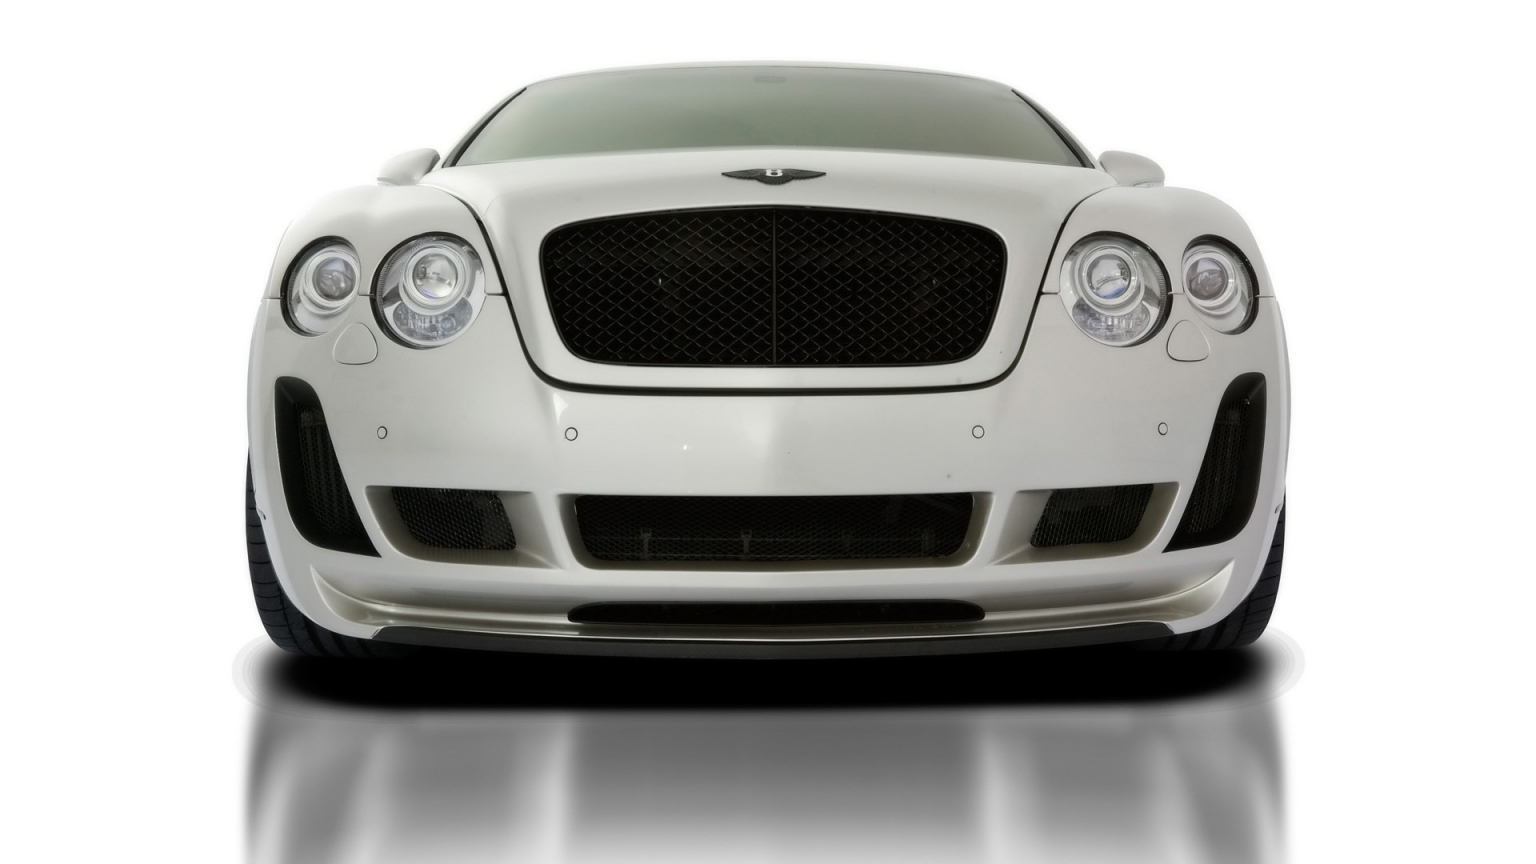 2010 Vorsteiner Bentley Continental GT BR9 Edition for 1536 x 864 HDTV resolution